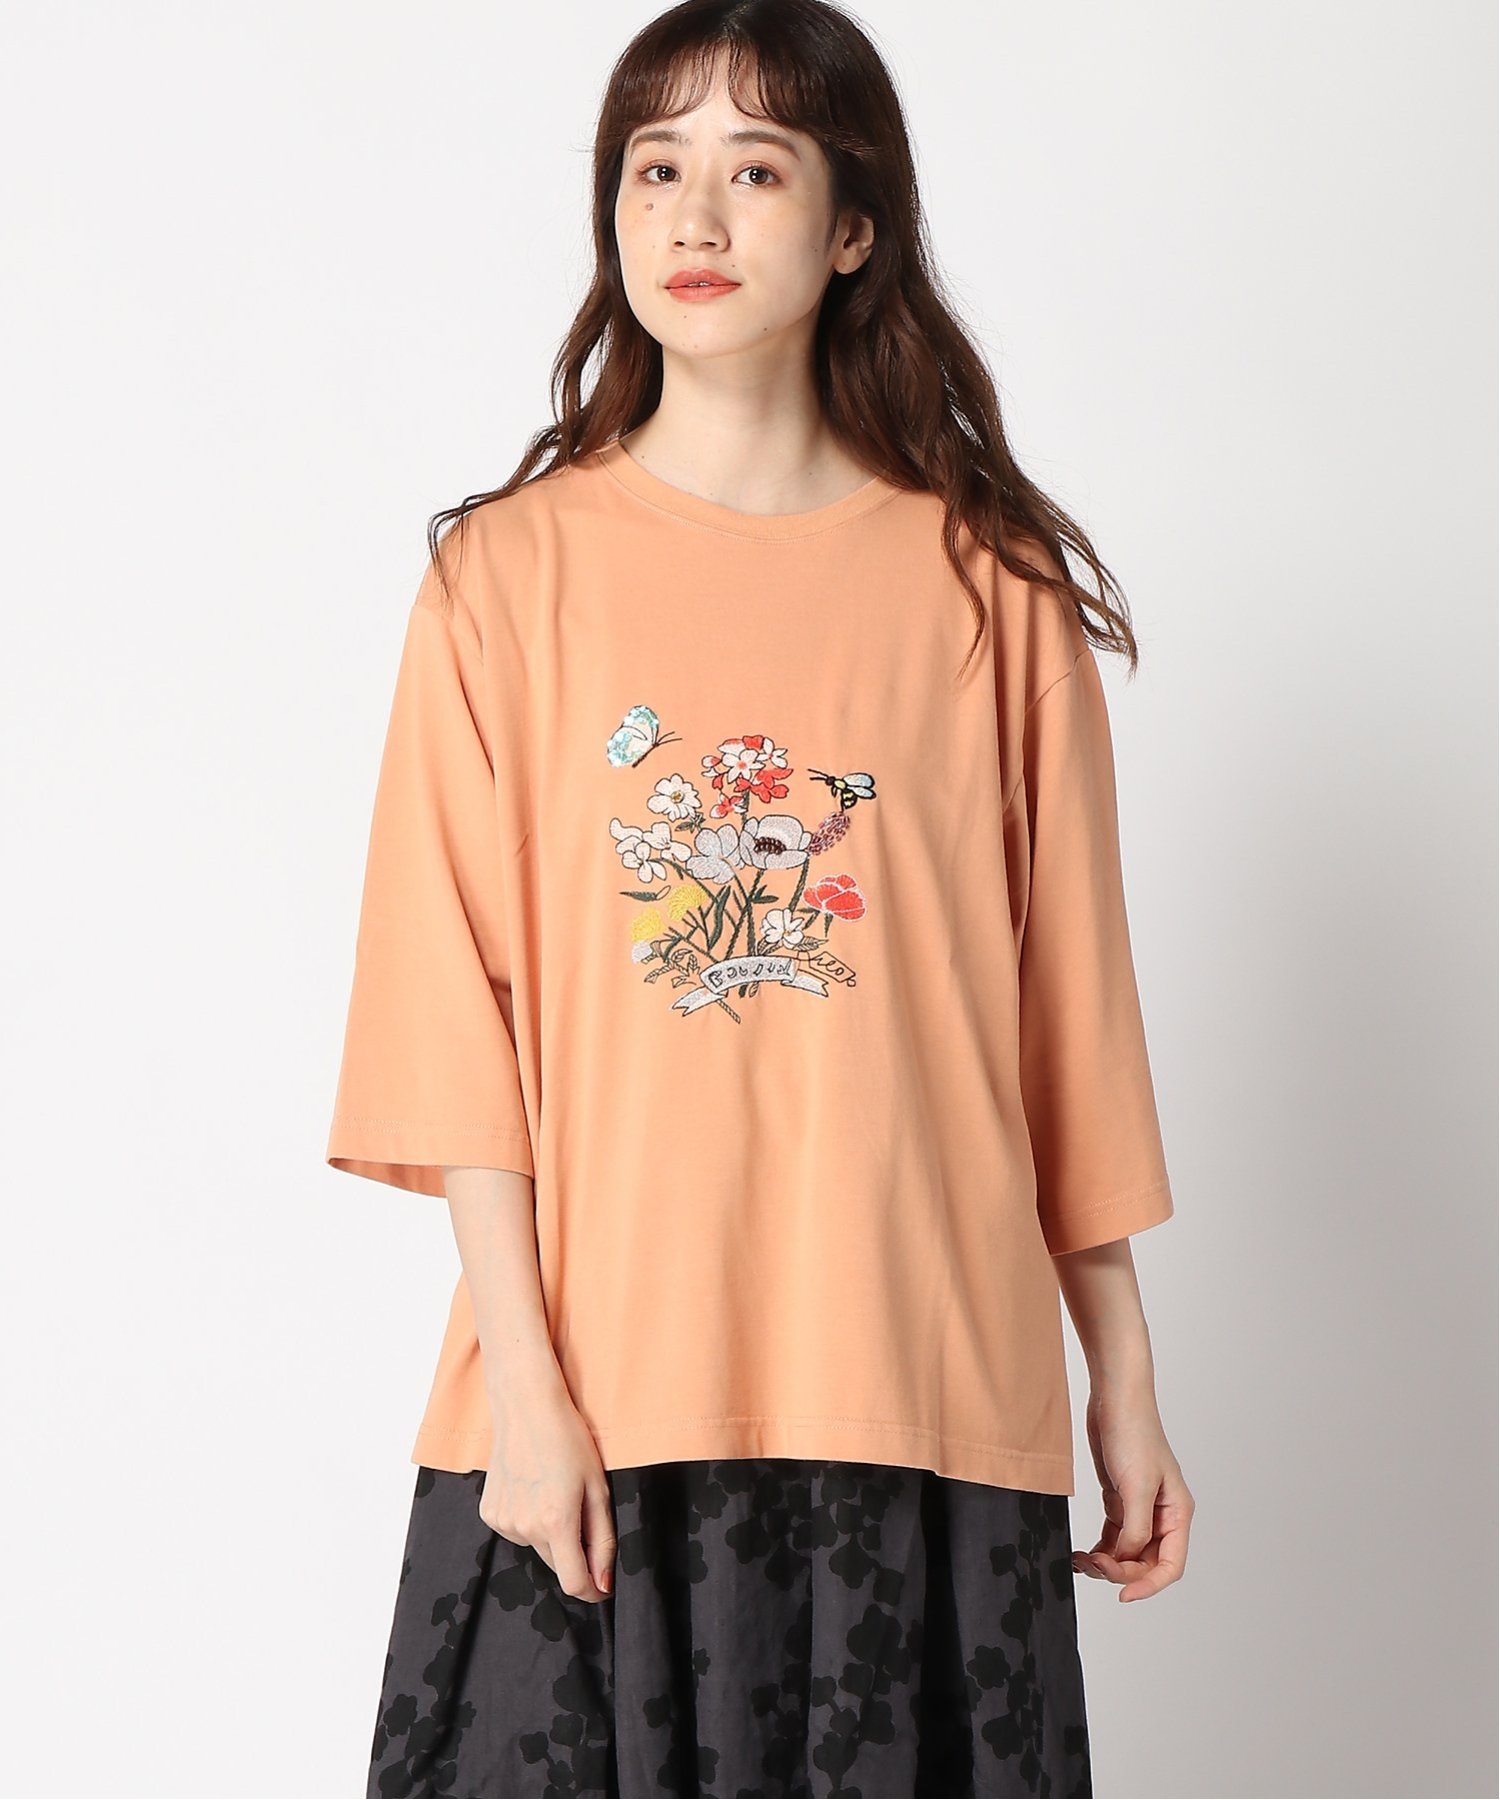 アーティストコラボ 「seasonal bouquet」ビーズ+刺繍Tシャツ